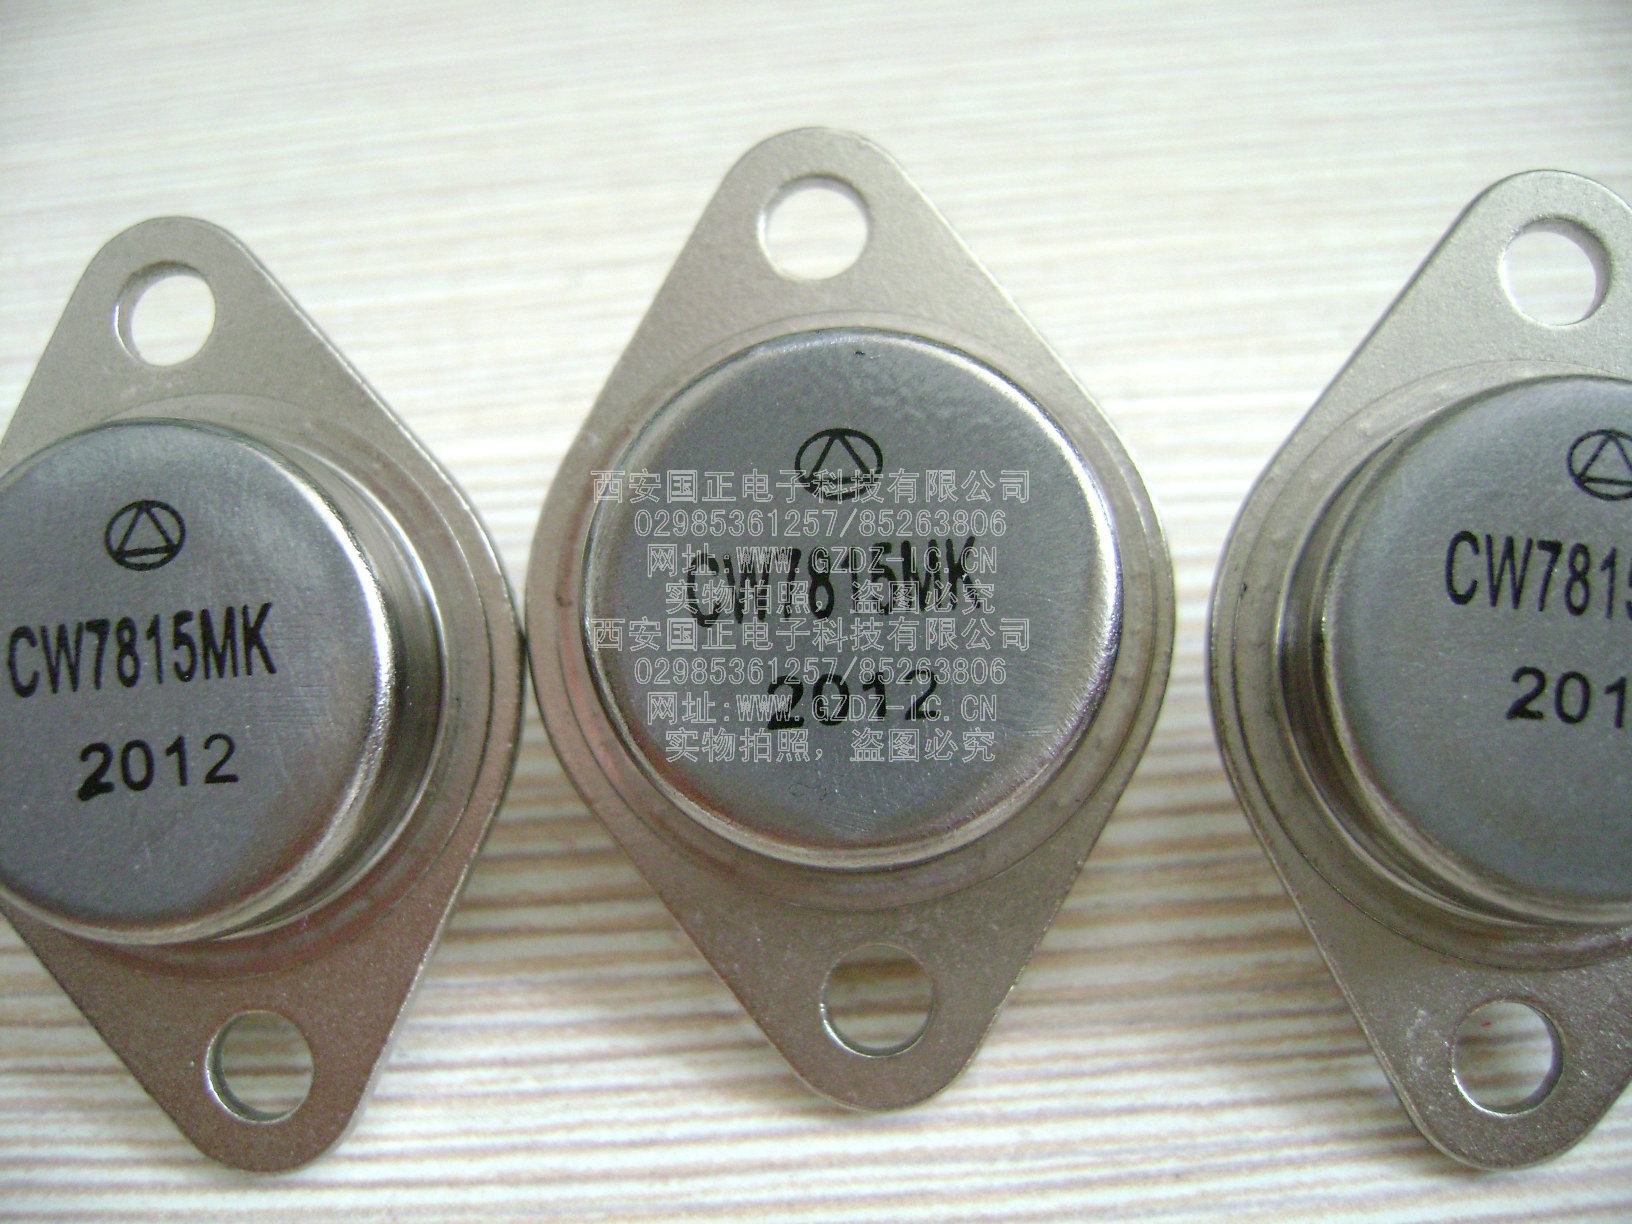 (三极管)固定稳压器 CW7909CK/EK/MK 全新原装 拍时询价